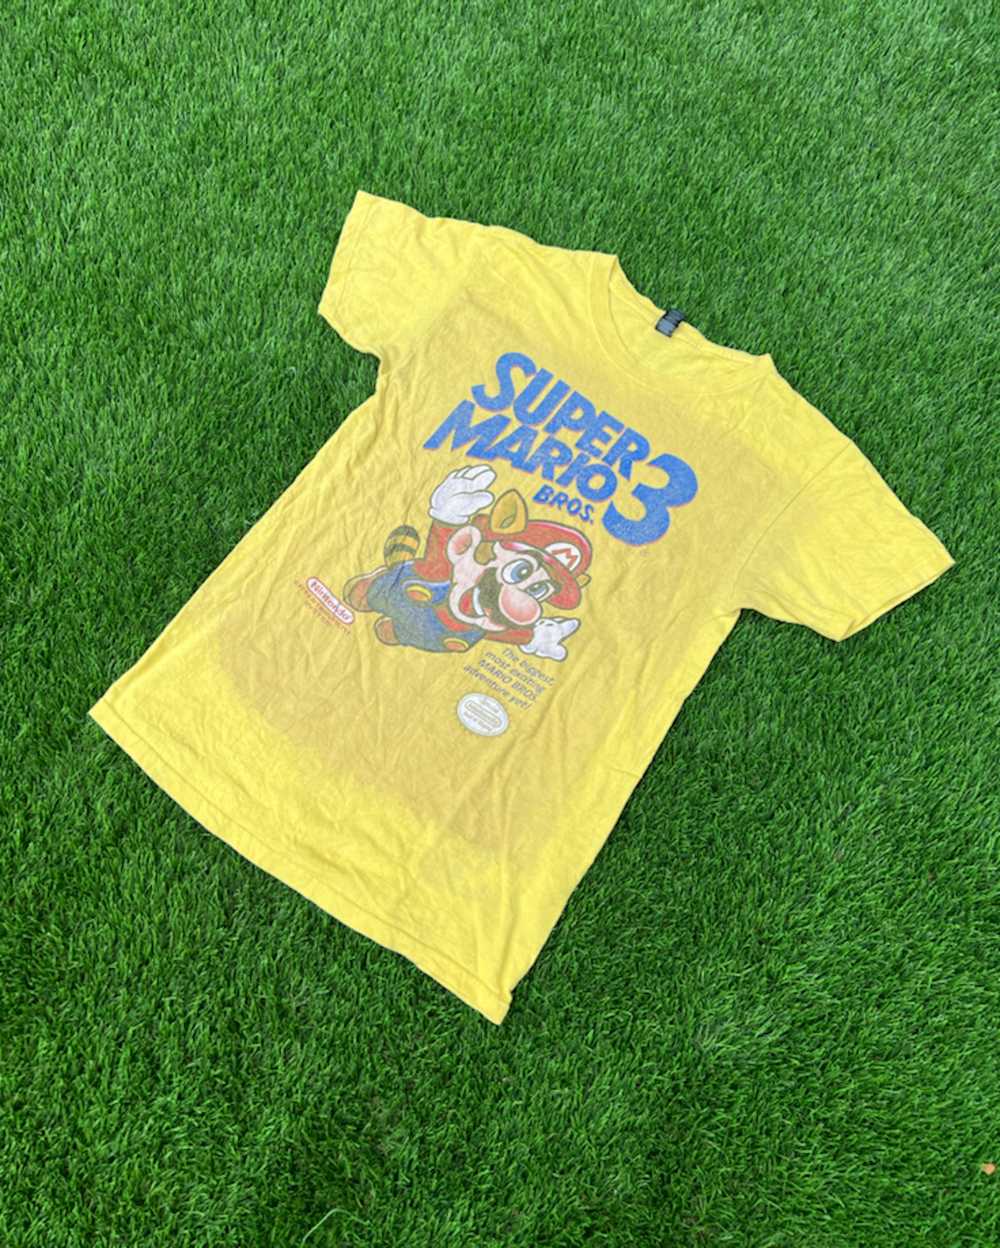 Nintendo Vintage Super Mario Bros 3 T Shirt - image 1